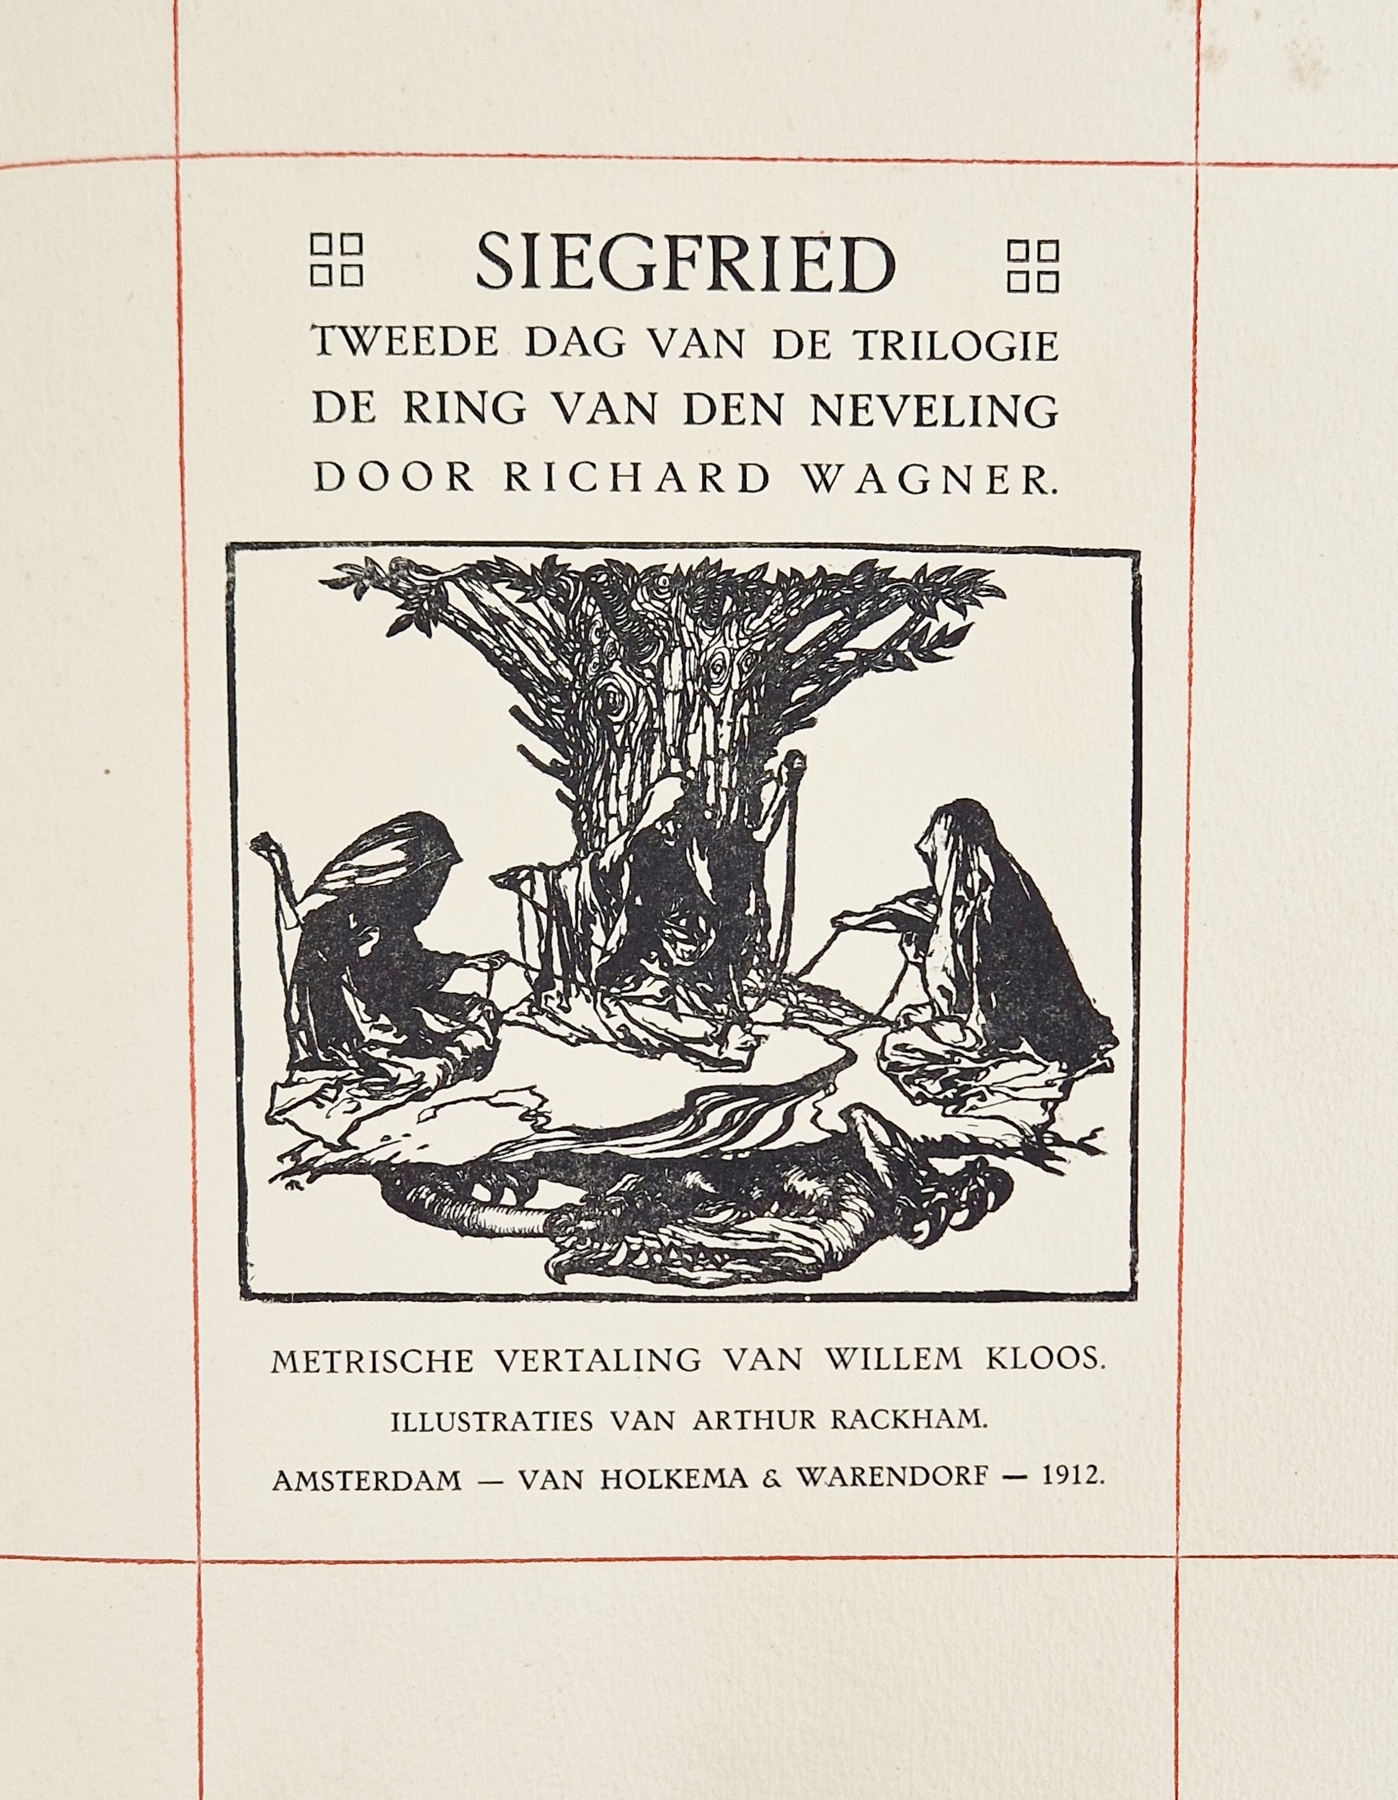 Rackham, Arthur (ills.) Kloos, Willem , Wagner. Richard "Godenschemering" no 103, "Siegfried", no. - Bild 4 aus 8